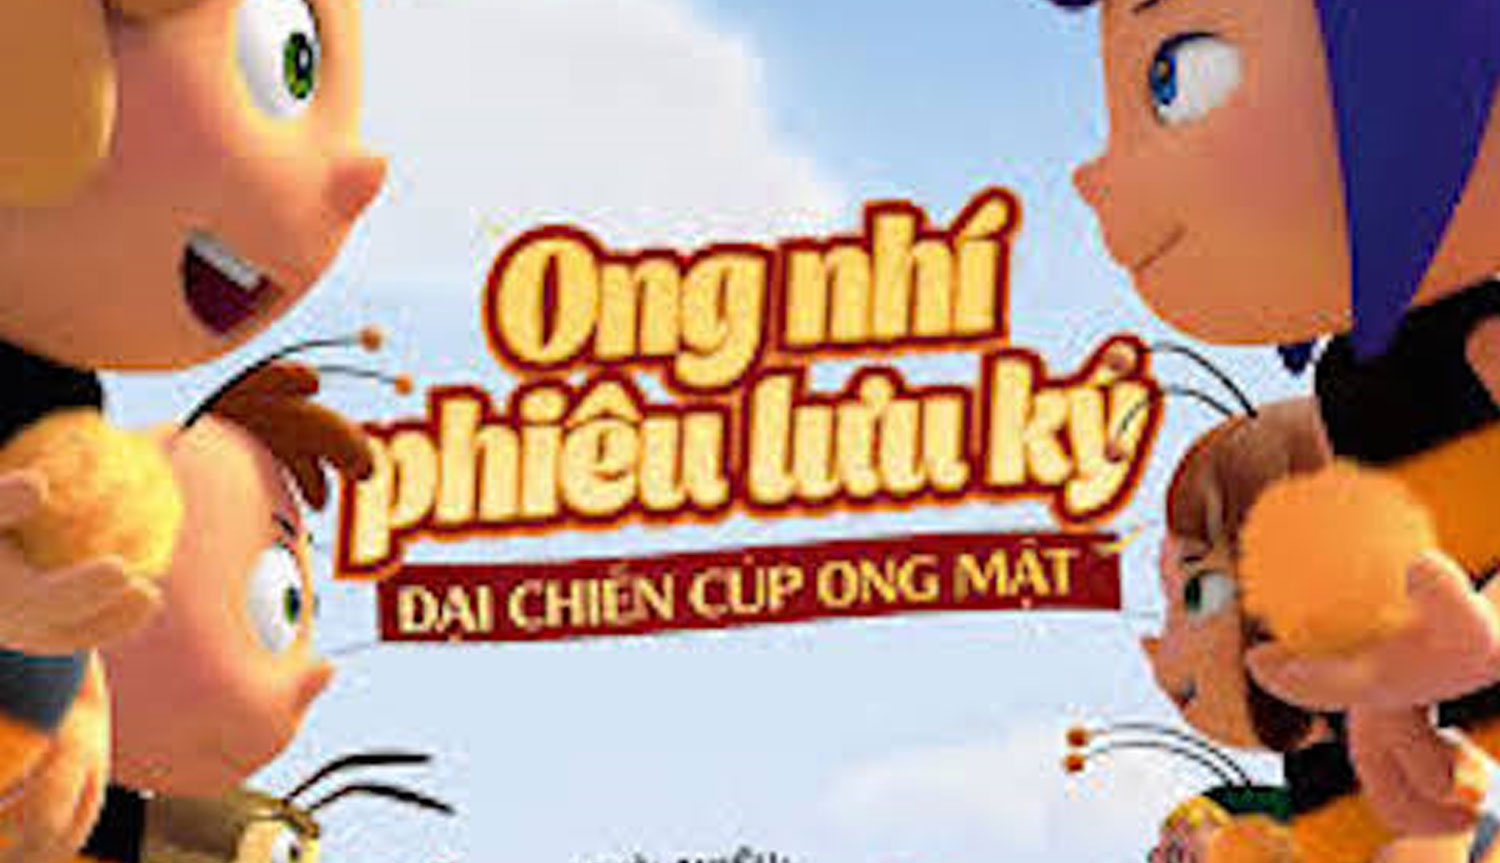 Phim Ong nhí phiêu lưu ký – Đại chiến cúp Ong Mật. Ảnh Poster phim